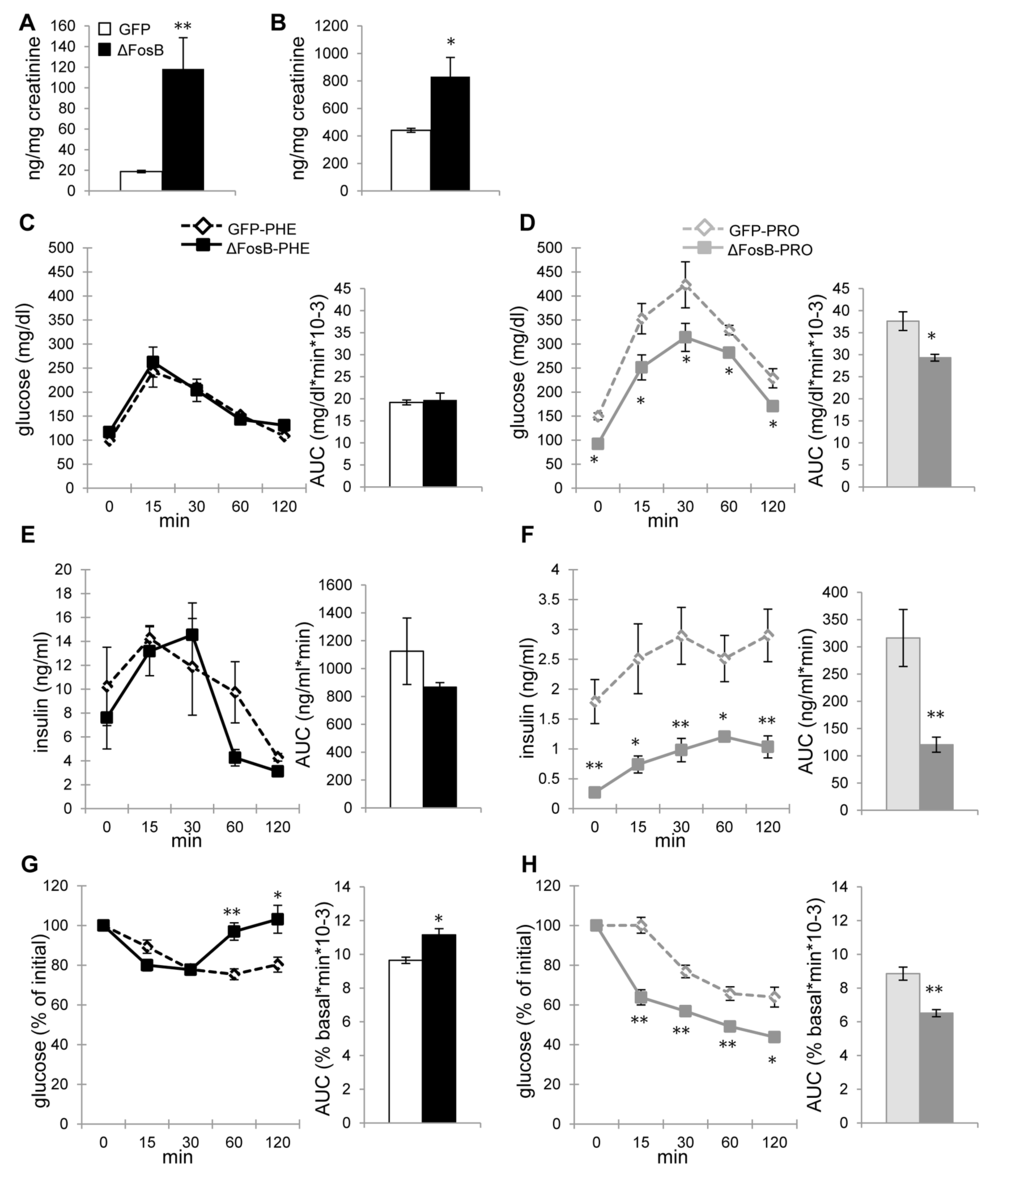 ΔFosB overexpressed in VHT regulates insulin secretion via α-, but not β-adrenergic receptor in aged mice. Mice were stereotaxically injected into VHT with AAV-∆FosB or AAV-GFP and treated 38-40 weeks post-surgically with either α-AR blocker phentolamine (PHE) or β-AR blocker propranolol (PRO) (n=3-4). (A) Urinary epinephrine and (B) norepinephrine in untreated aged mice. (C) GTT glucose of PHE-treated groups (D) GTT glucose of PRO-treated groups (E) GTT insulin of PHE-treated groups (F) GTT insulin of PRO-treated groups (G) ITT glucose of PHE-treated groups (H) ITT glucose of PRO-treated groups. Data are expressed as mean ±SEM. *p